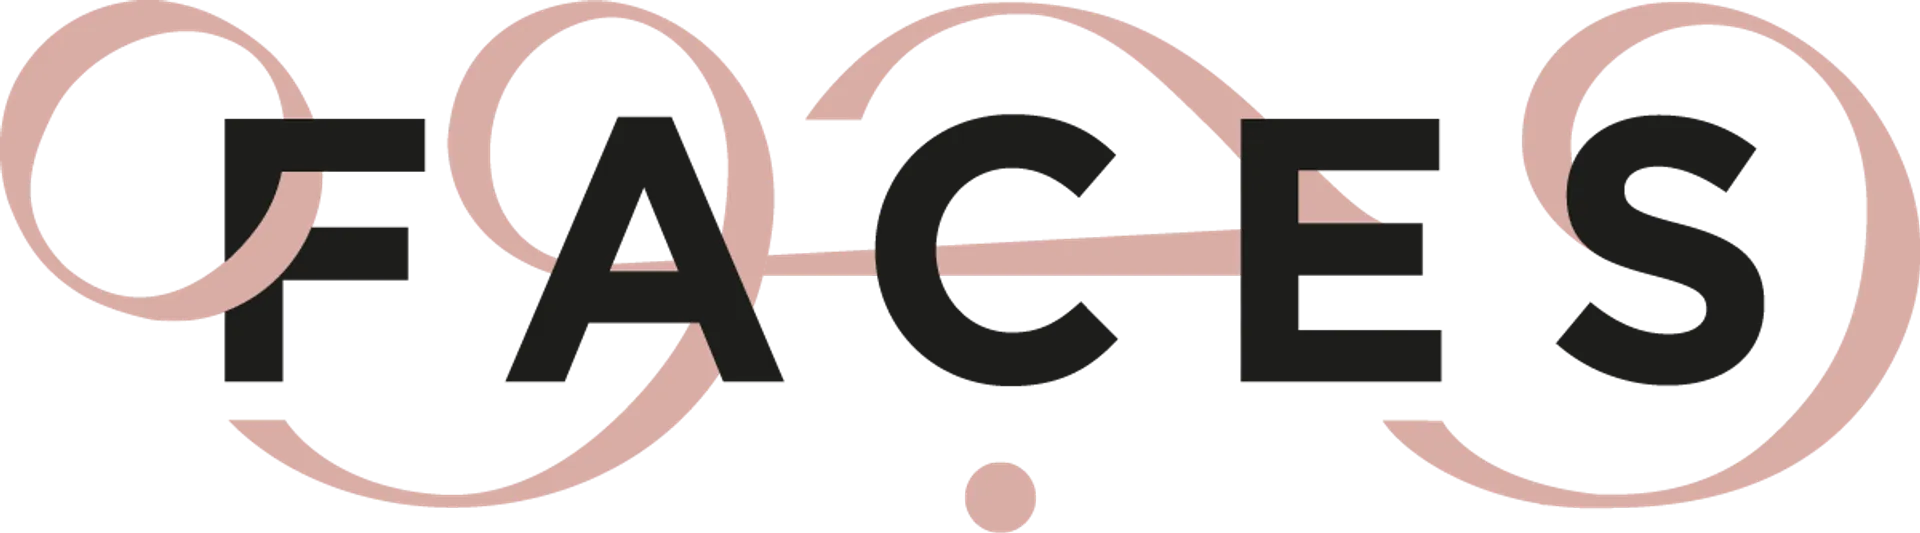 FACES logo